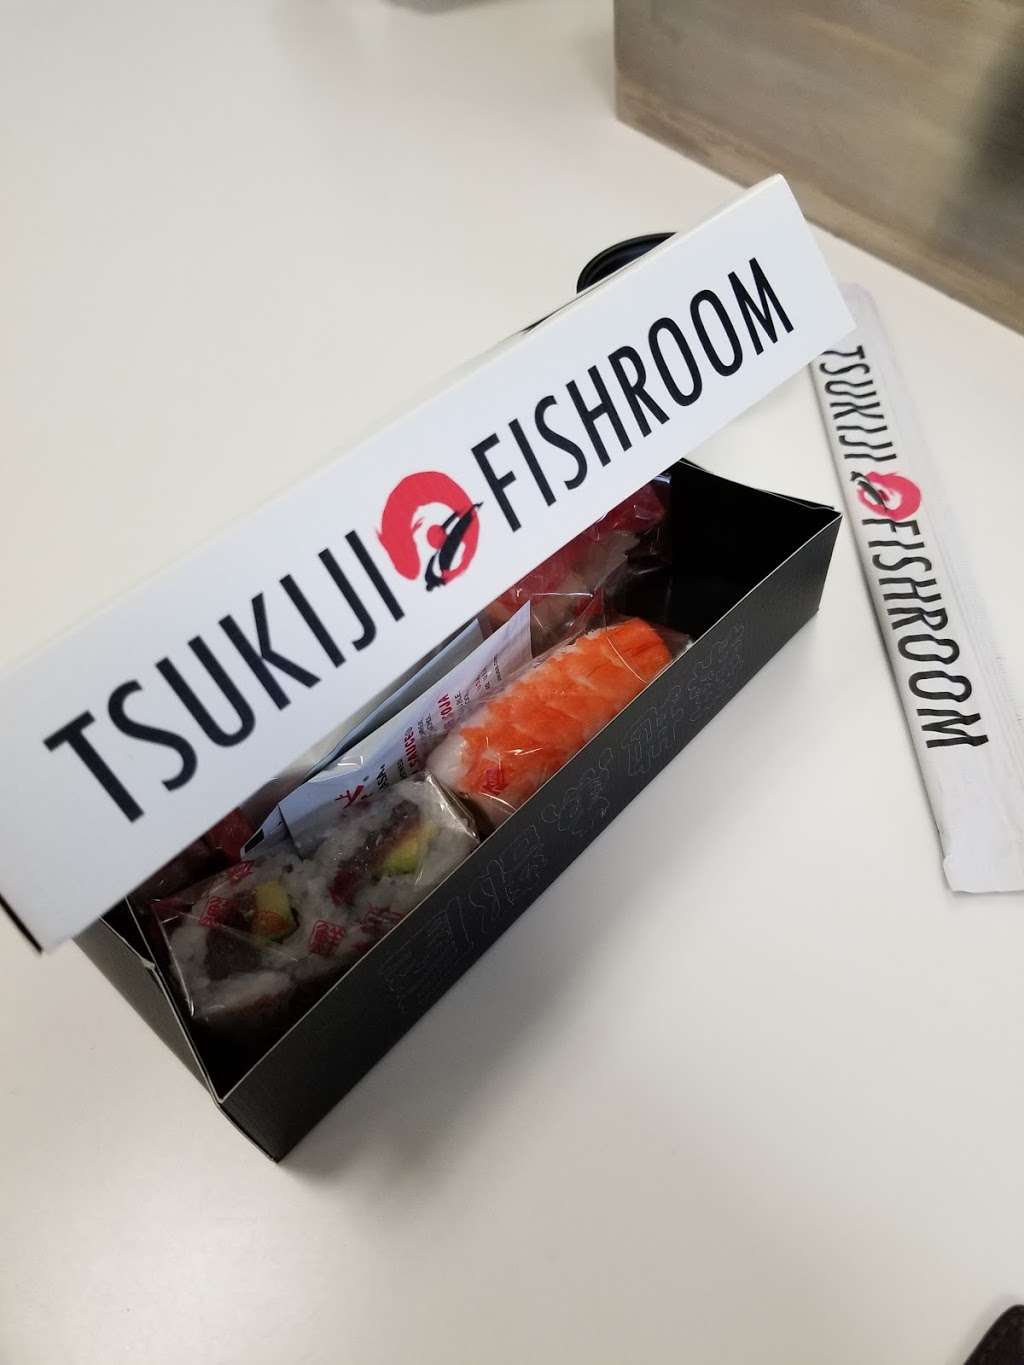 Tsukiji Fishroom | Newark, NJ 07114, USA